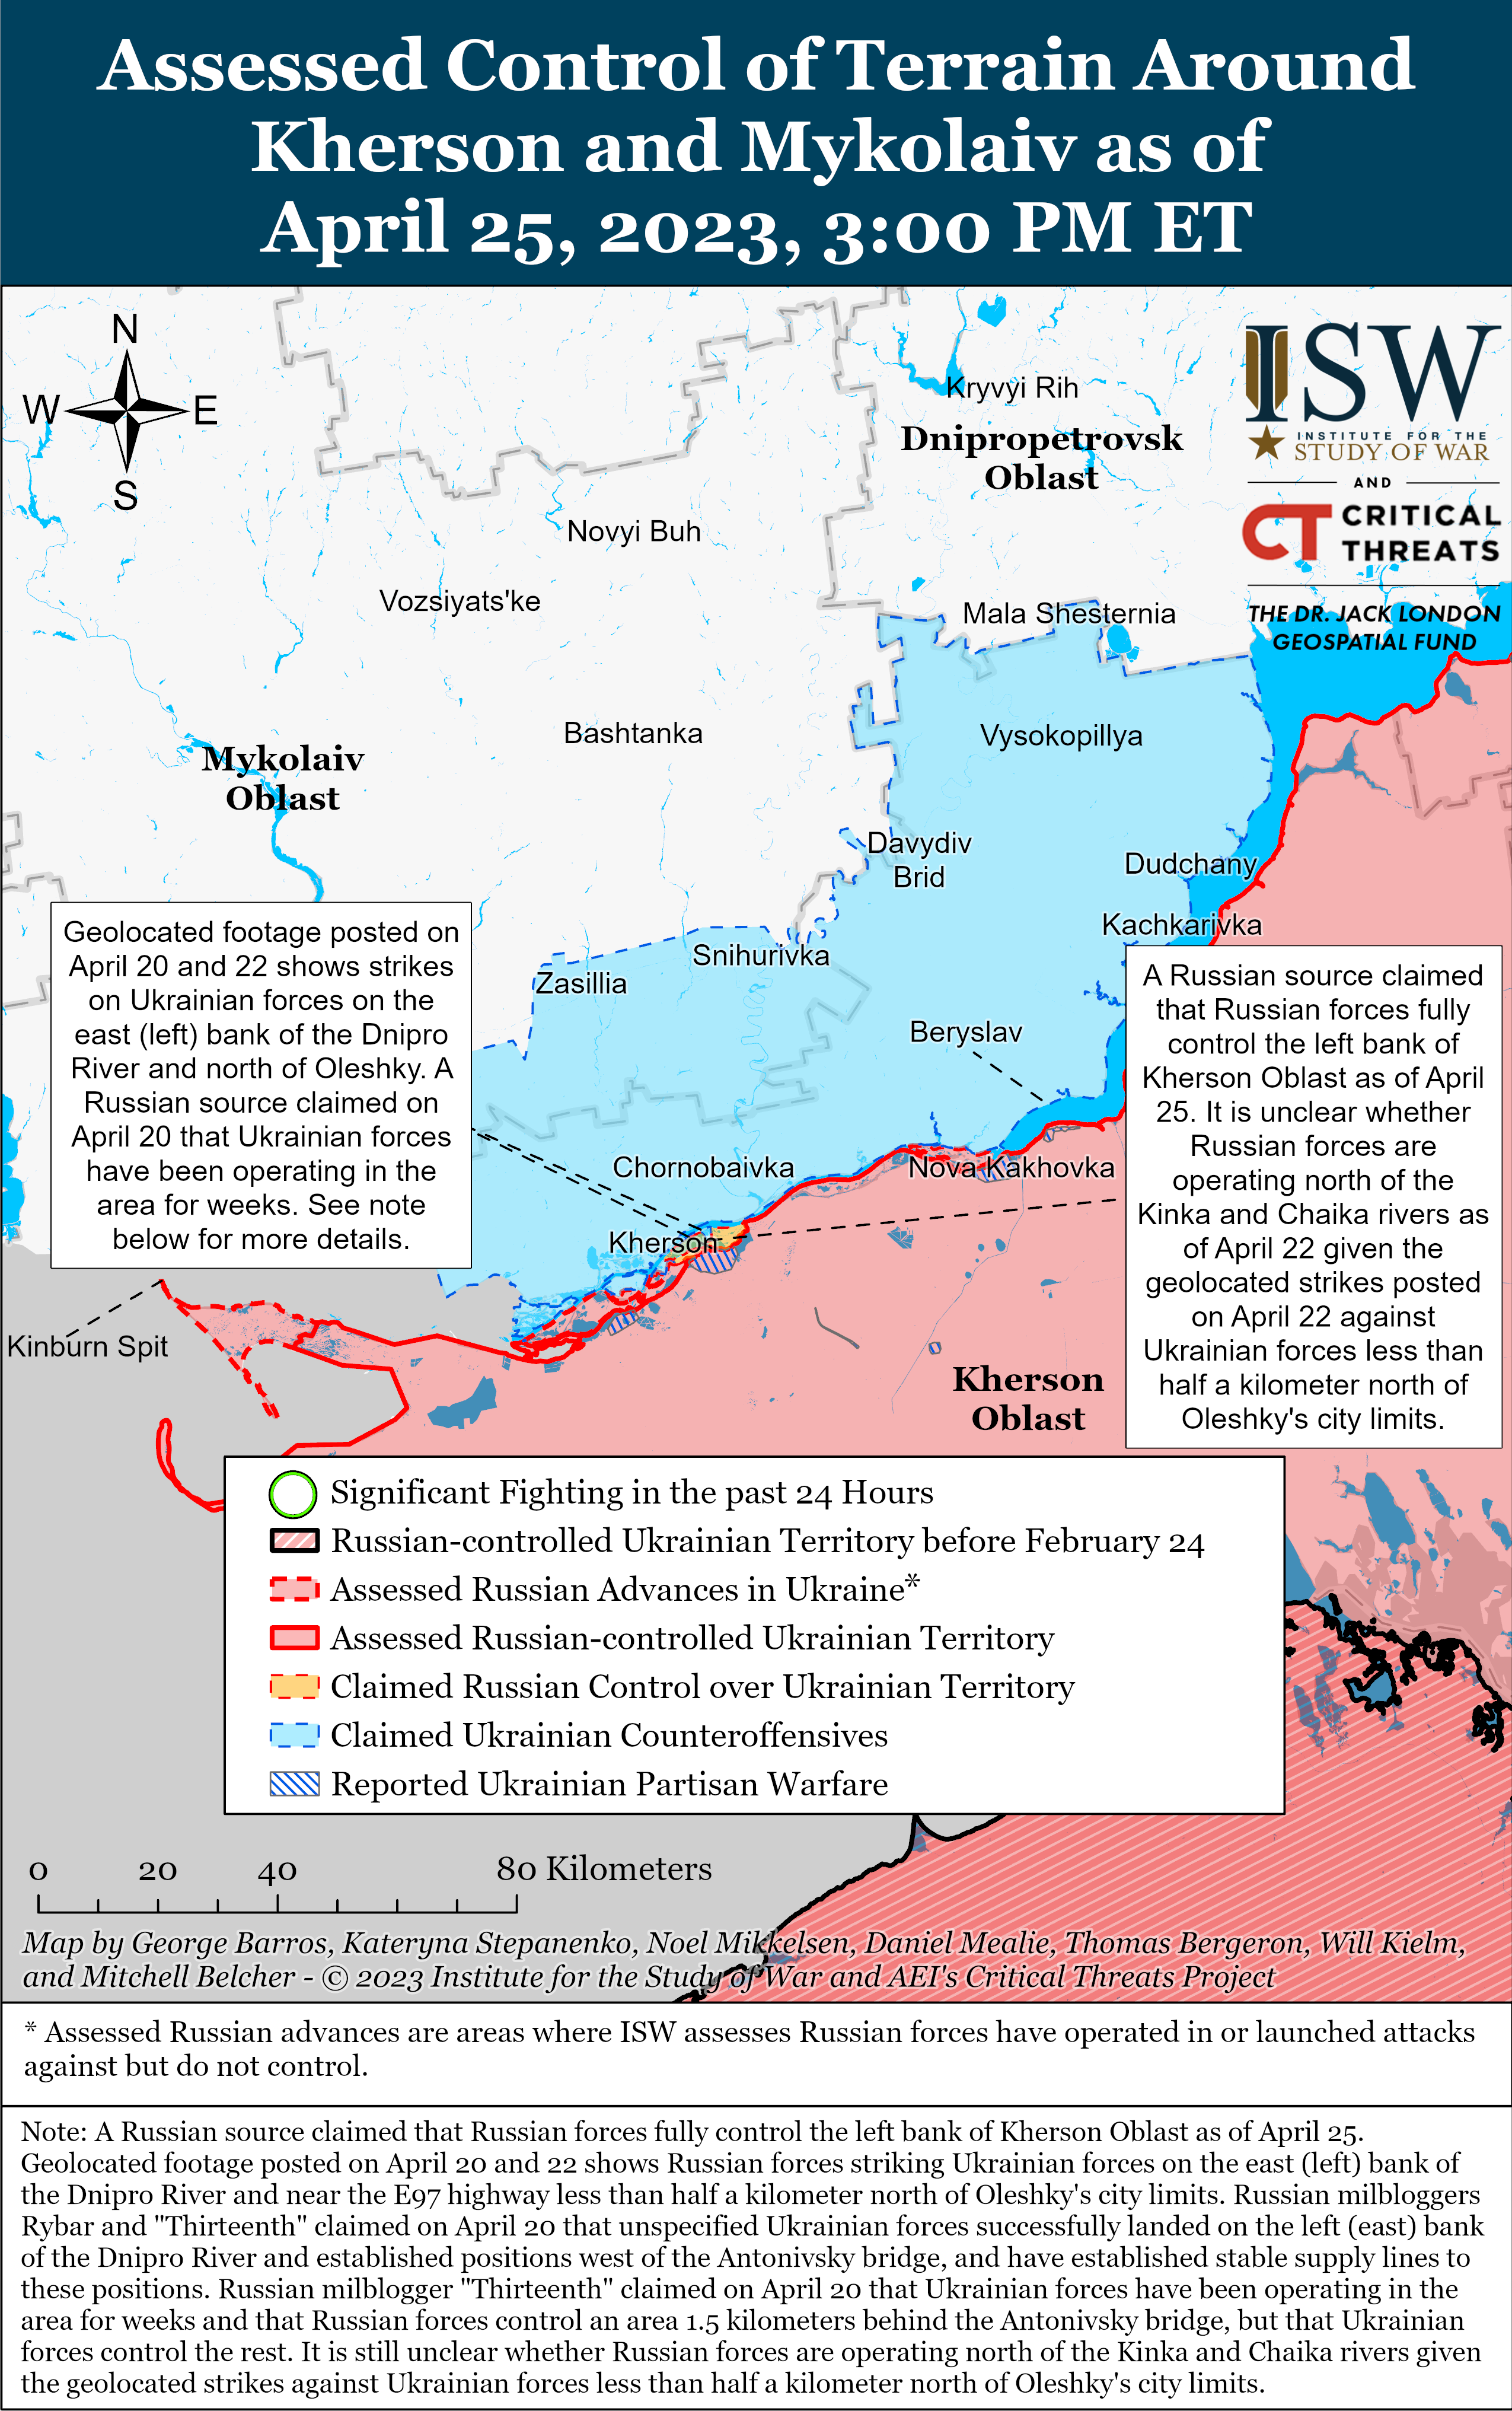 Найважчі бої йдуть на півдні та заході Бахмута: карти боїв ISW